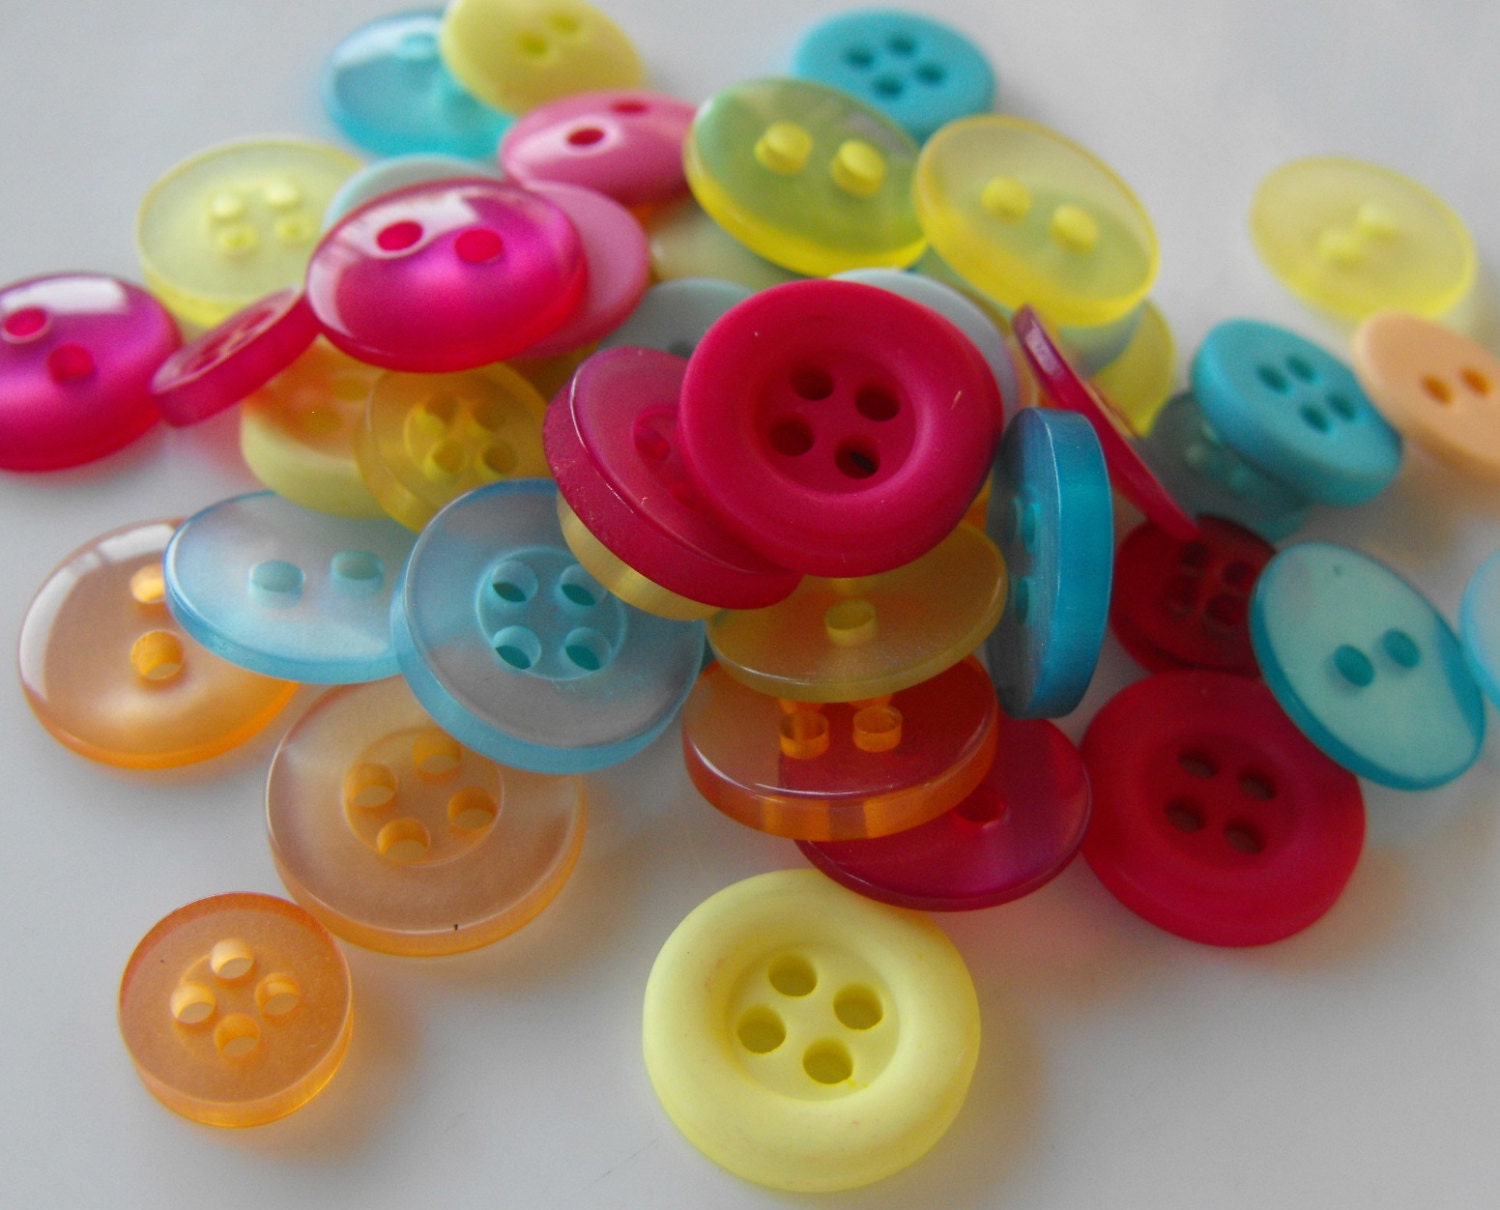 10 Random Mix Buttons, Round Buttons, Print Buttons, Buttons Bulk, Assorted  Buttons, Colorful Buttons, Button Assortment, Craft Buttons 